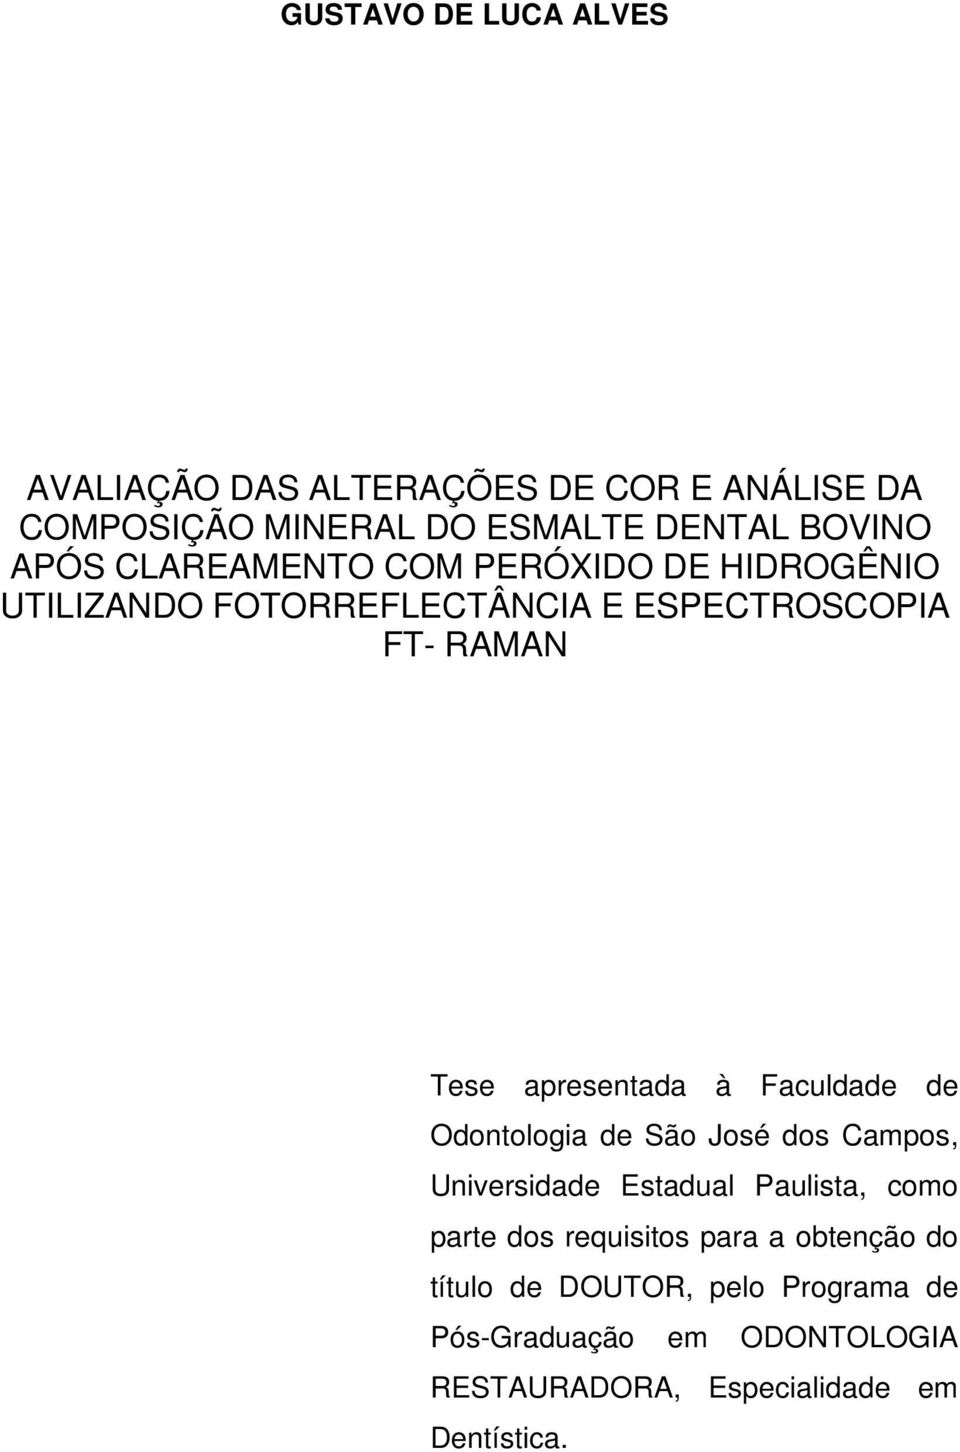 Faculdade de Odontologia de São José dos Campos, Universidade Estadual Paulista, como parte dos requisitos para a